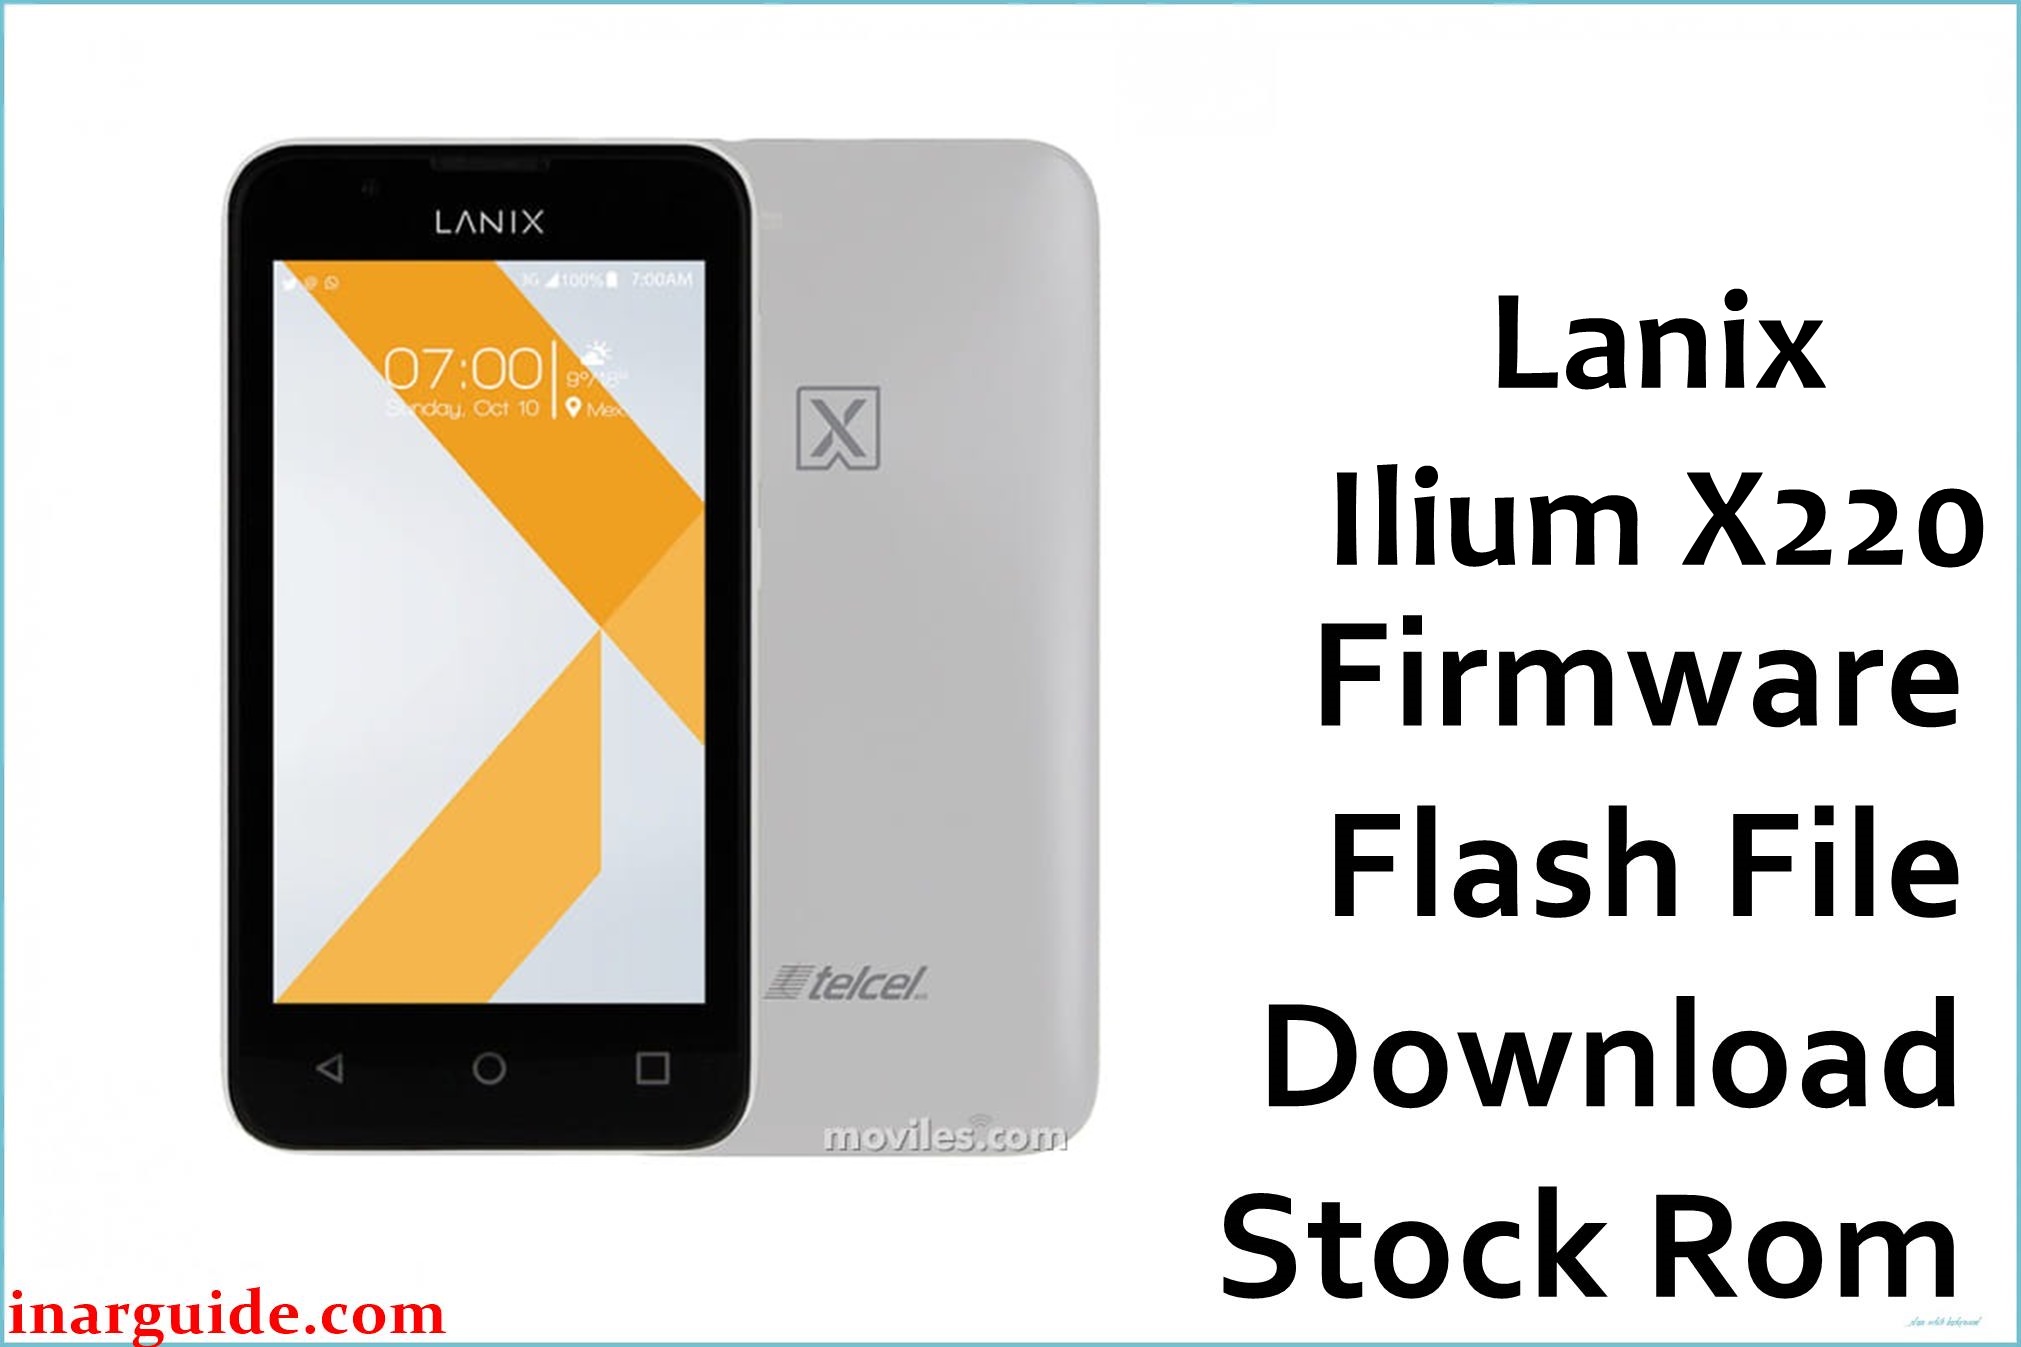 Lanix Ilium X220